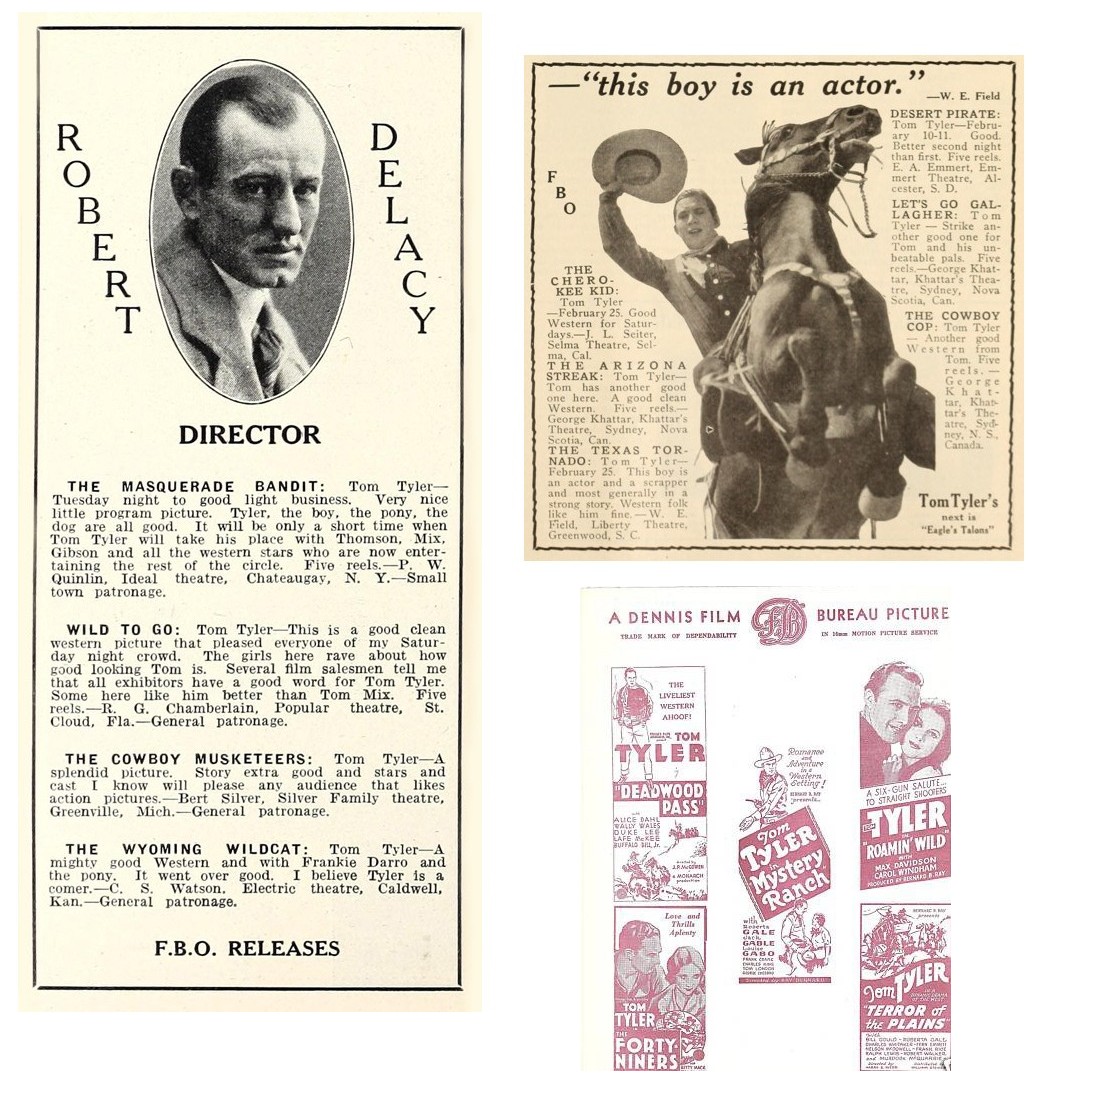 Exhibitor's Herald April 7 1928 film praise for Tom Tyler Robert DeLacy